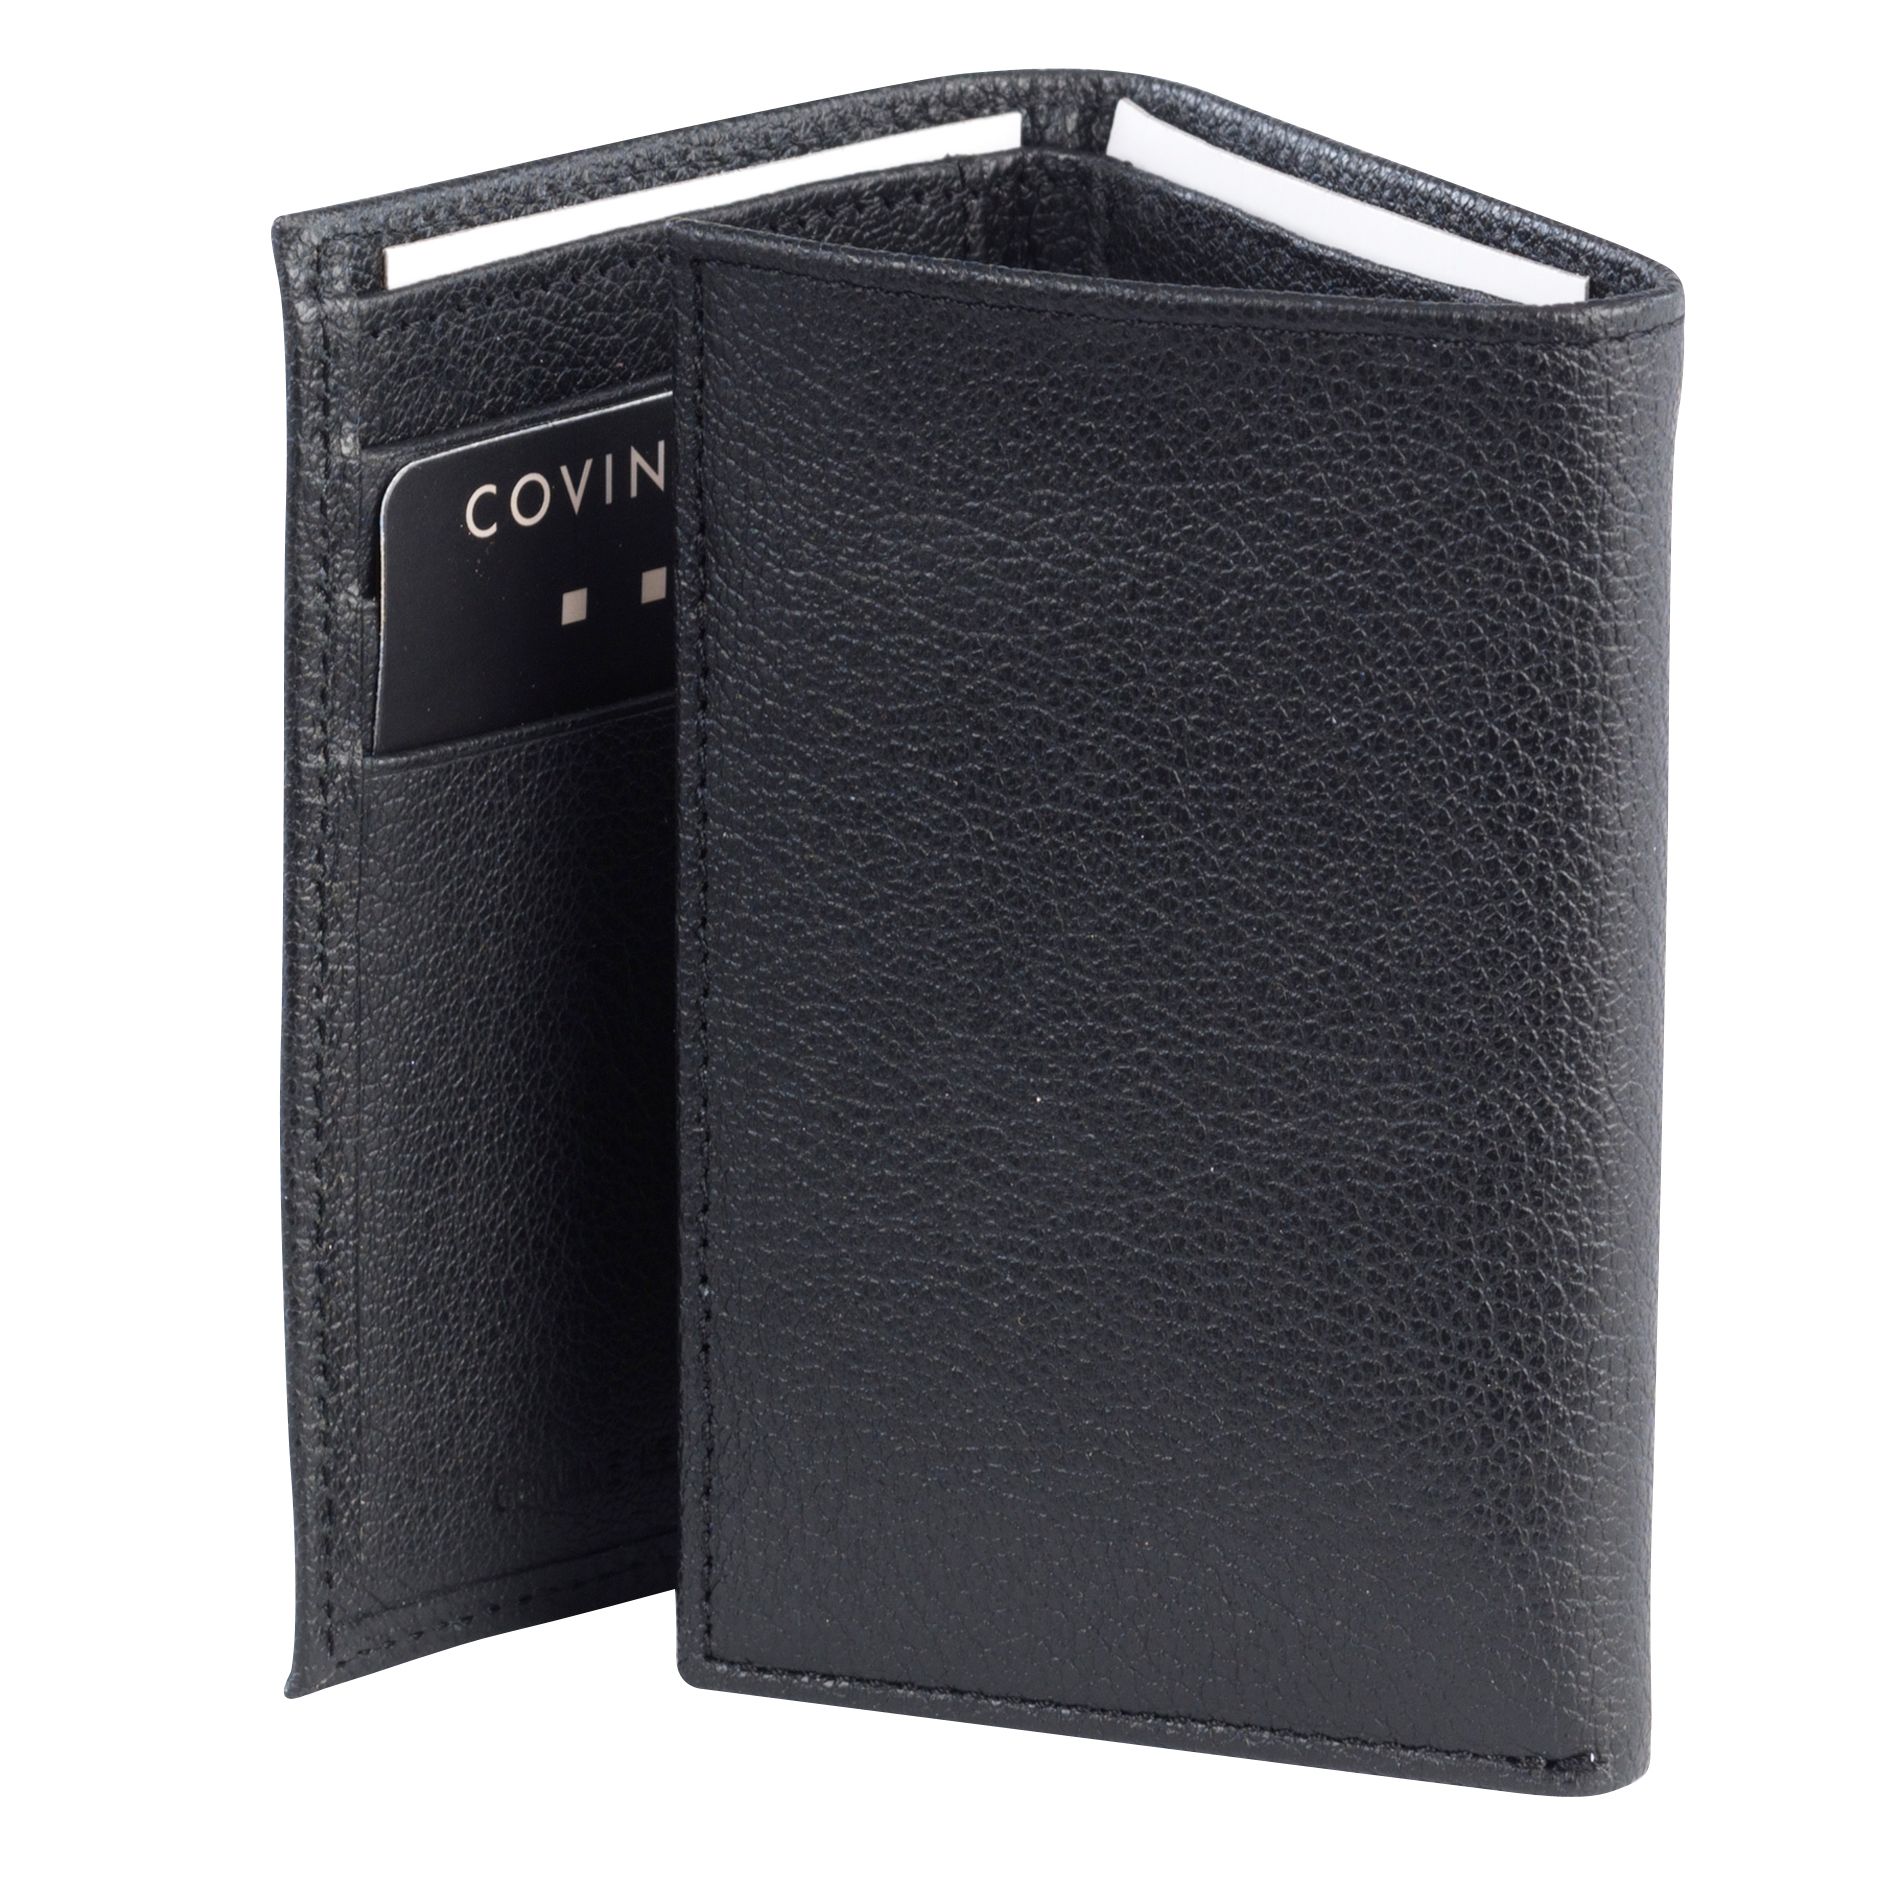 Covington Three-Fold Wallet